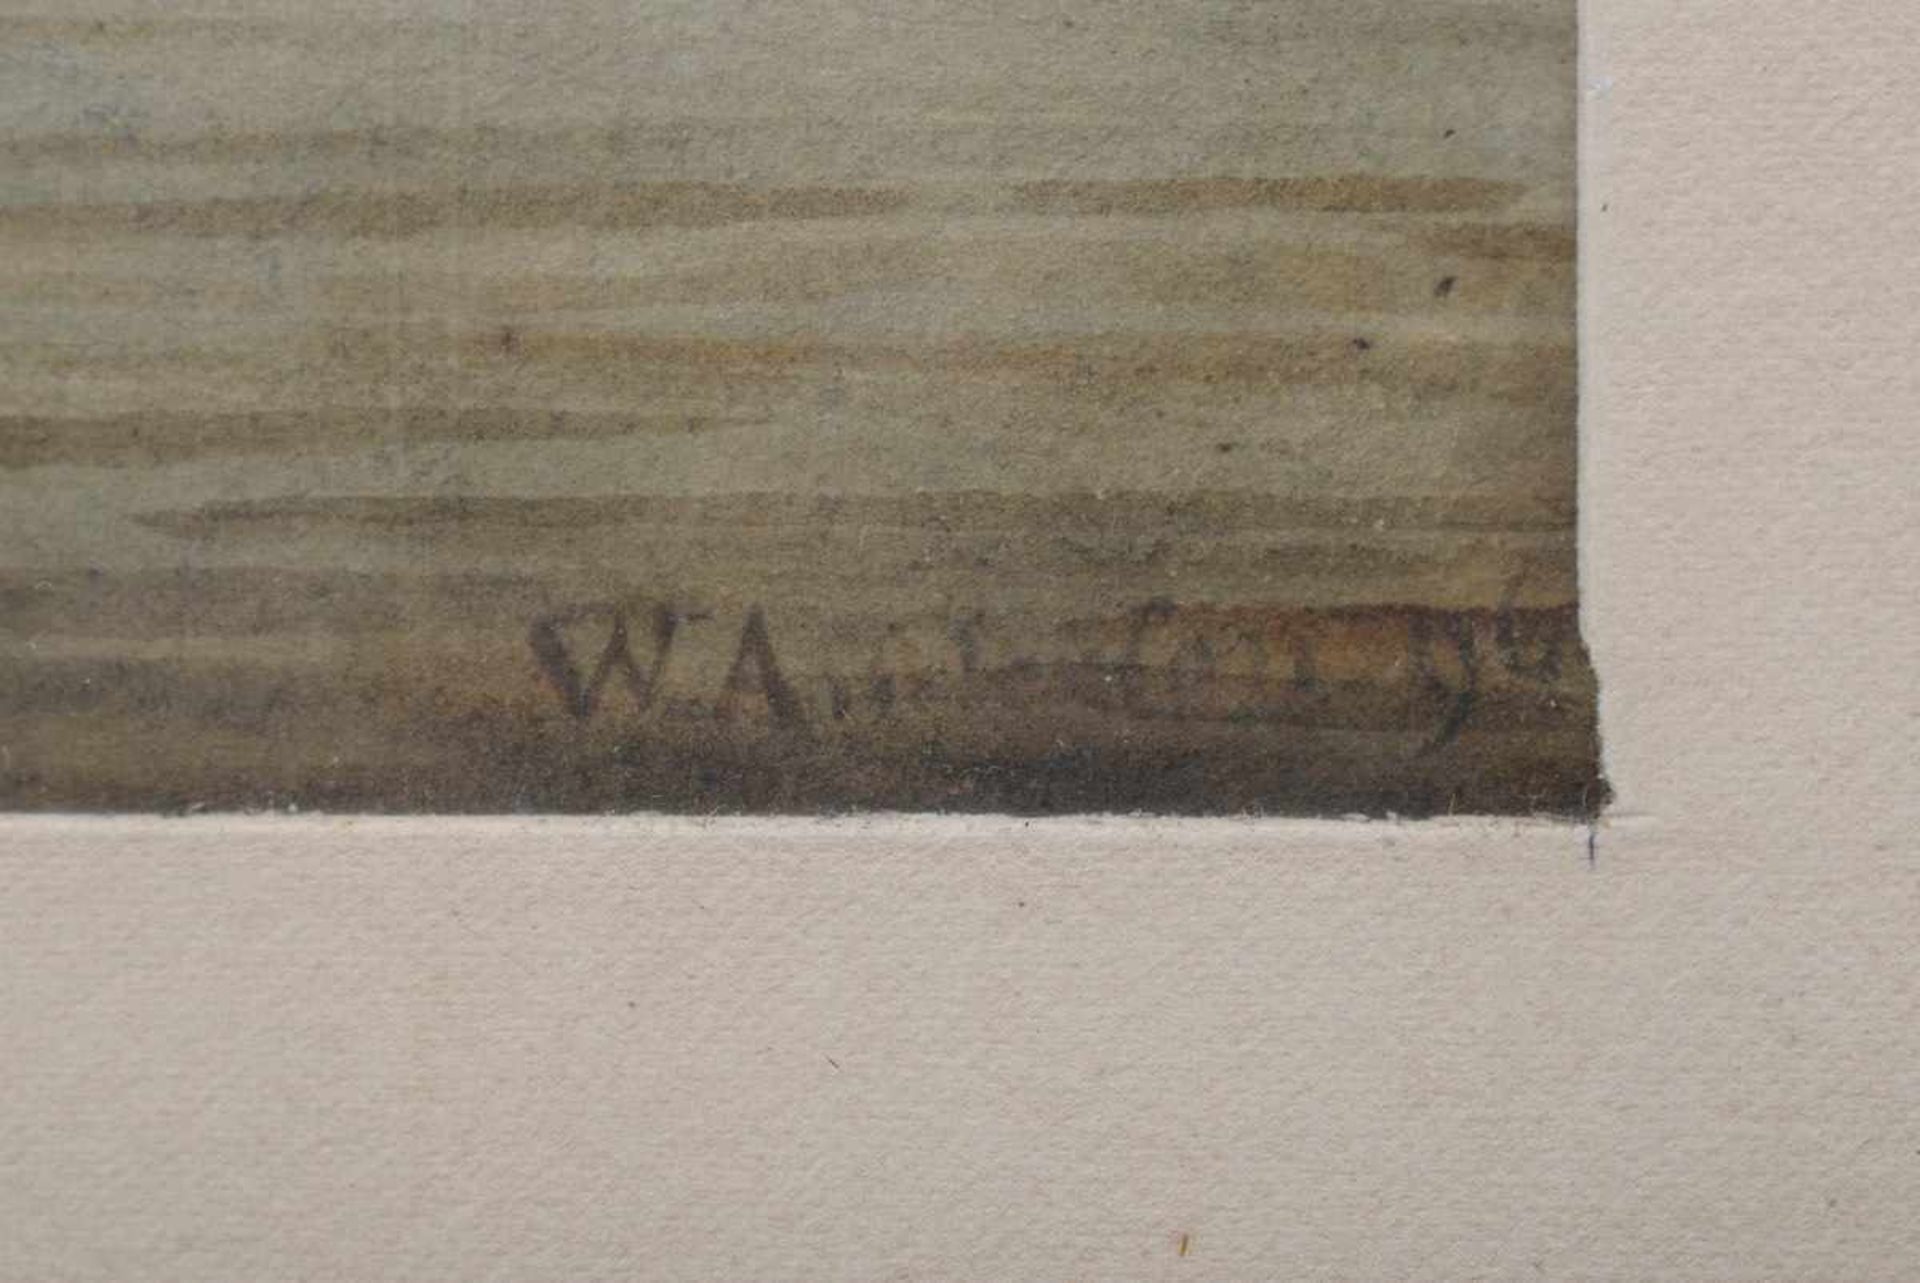 Unbekannter Künstler des 18.Jh. "Schiffe auf Reede", Aquarell, u.r. unleserlich sign. "W.A..." u. - Image 3 of 3